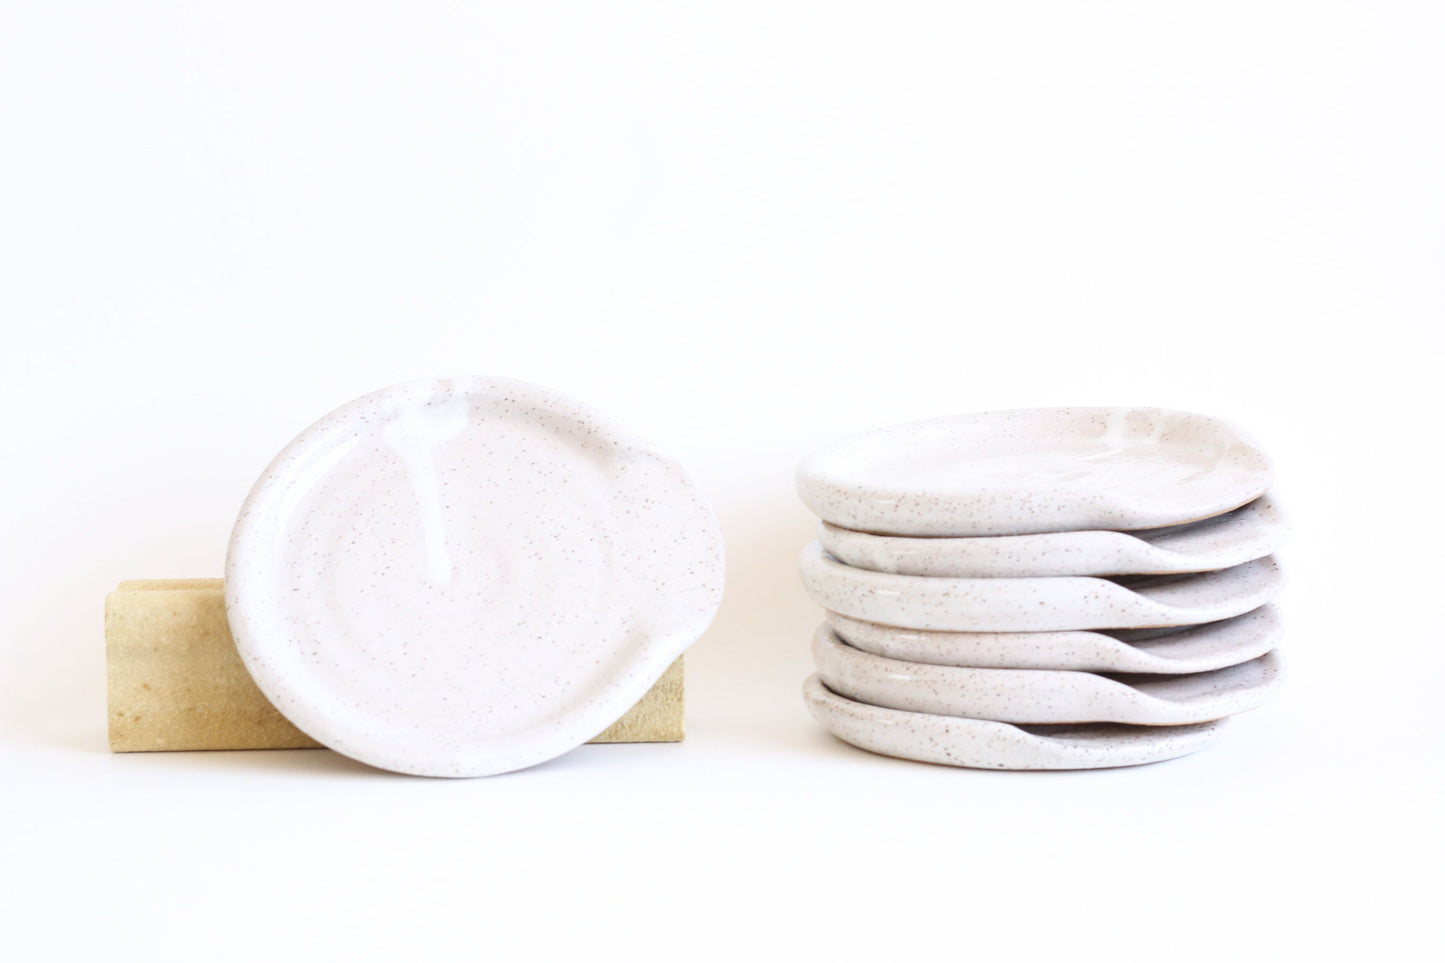 White Glossy Speckled Buff Stoneware Ceramic Spoon Rest - Wheel Thrown, Minimalist, Modern, Simple, Handmade Kitchenware